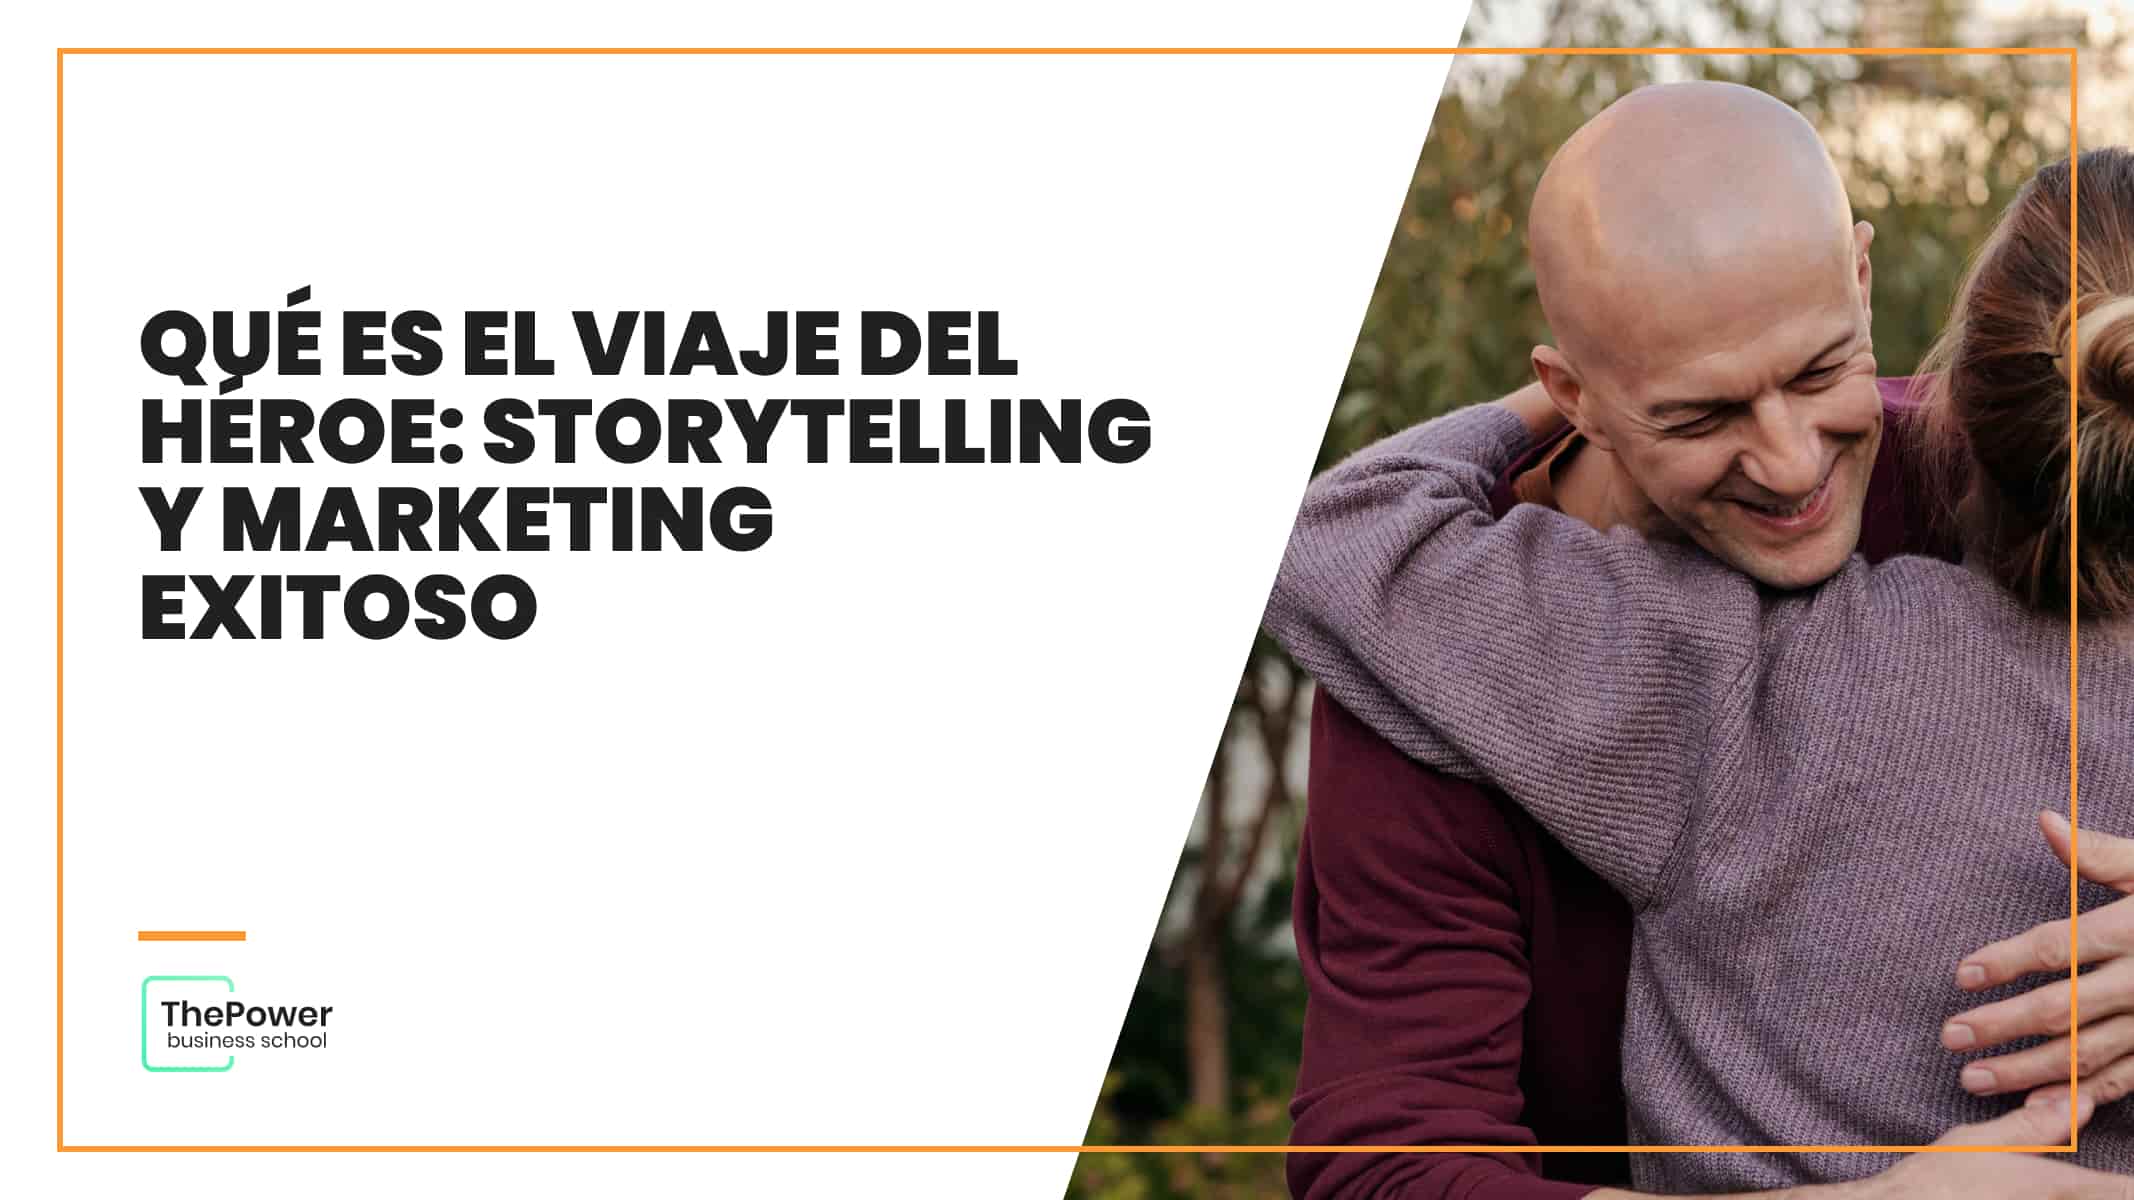 Qué es el viaje del héroe: storytelling y marketing exitoso 